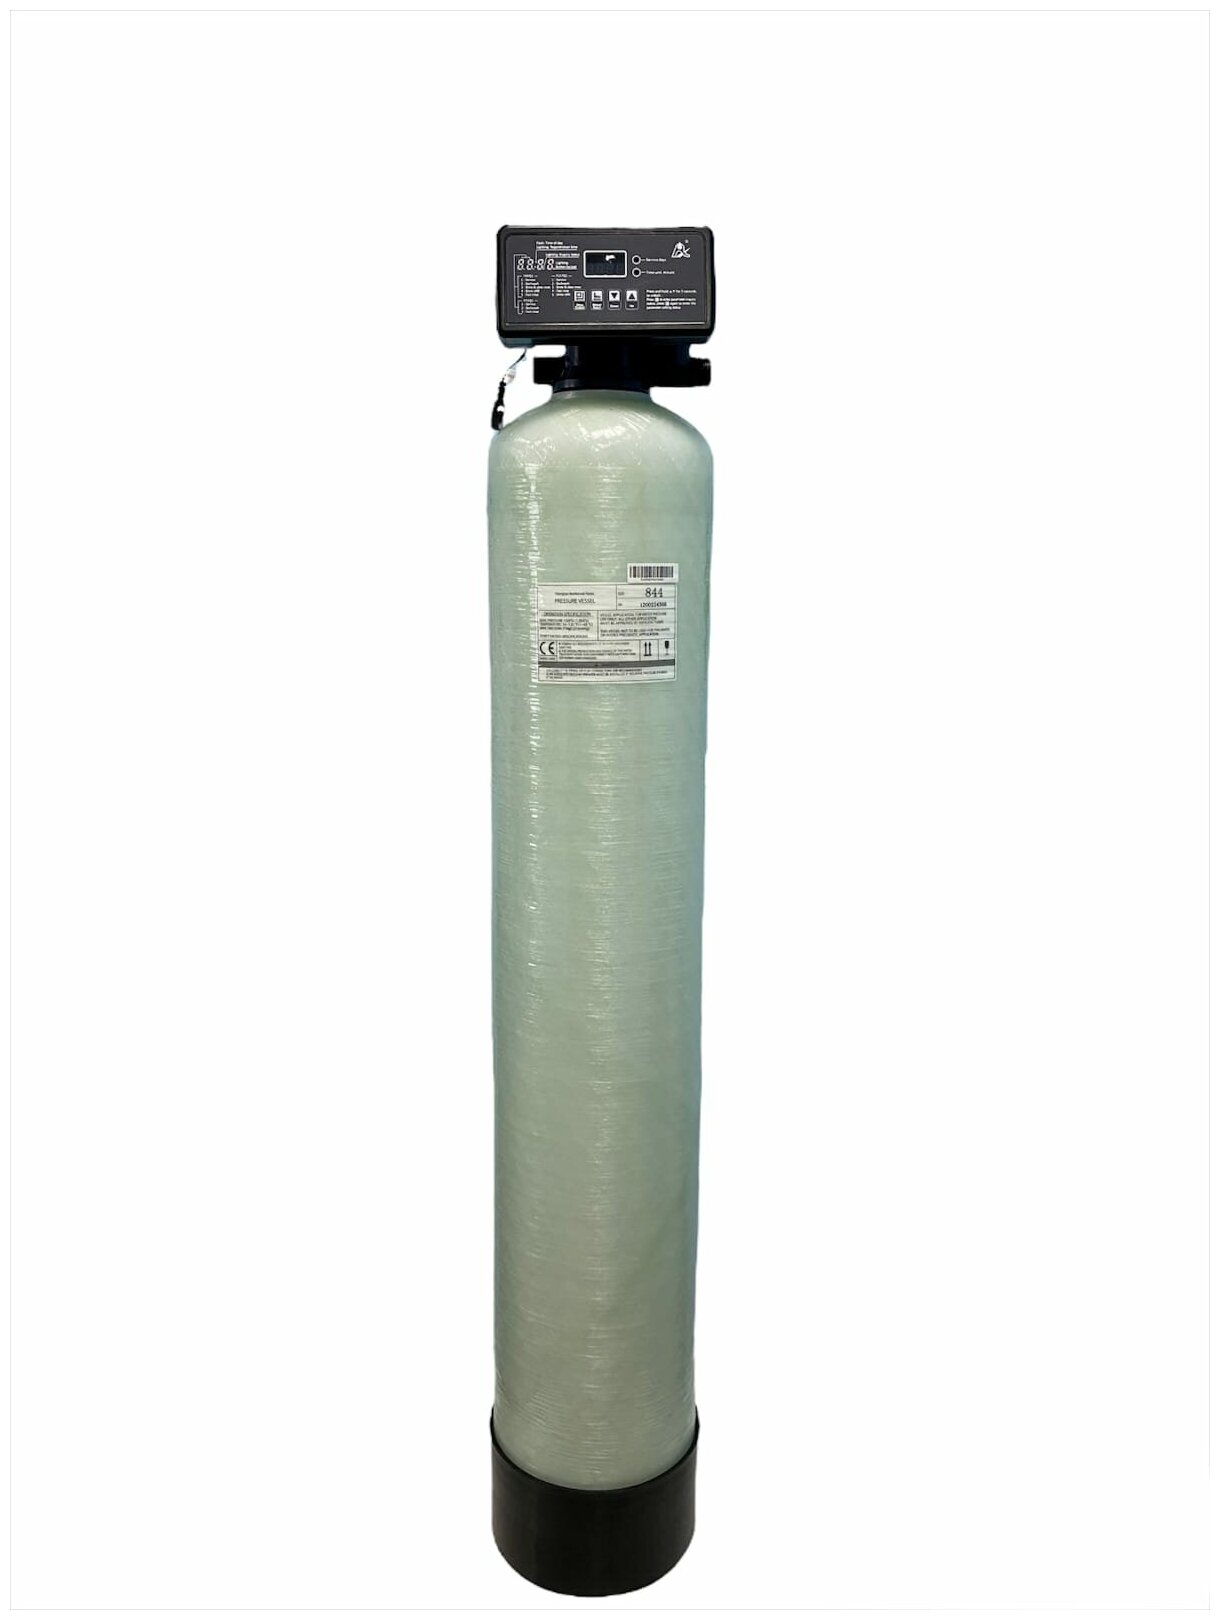 Фильтр обезжелезивания воды Canature 0844 автоматический под загрузку (обезжелезиватель) по таймеру